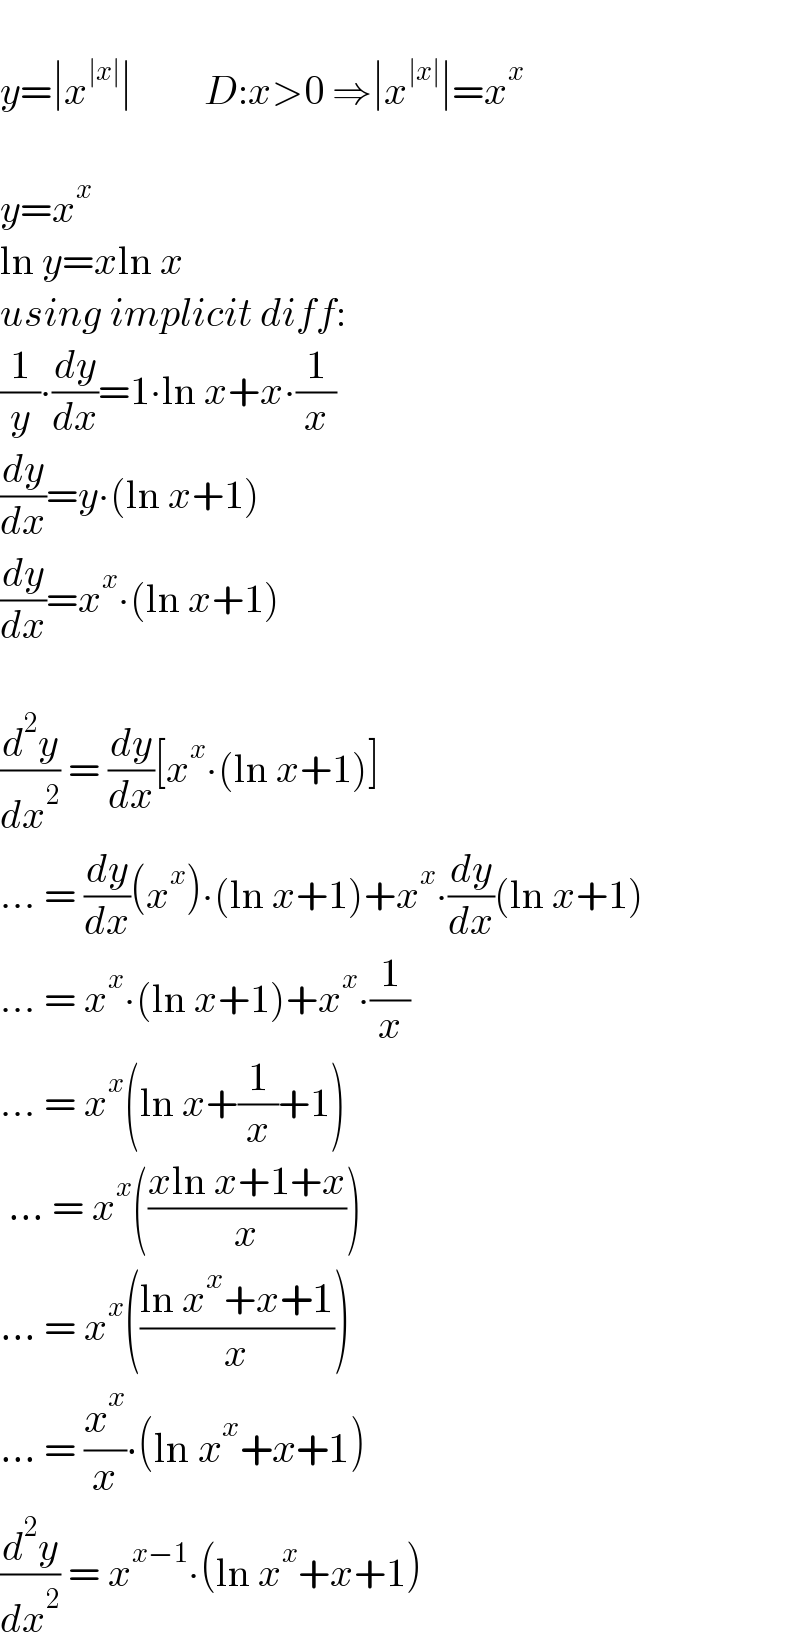   y=∣x^(∣x∣) ∣         D:x>0 ⇒∣x^(∣x∣) ∣=x^x     y=x^x    ln y=xln x  using implicit diff:  (1/y)∙(dy/dx)=1∙ln x+x∙(1/x)  (dy/dx)=y∙(ln x+1)  (dy/dx)=x^x ∙(ln x+1)    (d^2 y/dx^2 ) = (dy/dx)[x^x ∙(ln x+1)]  ... = (dy/dx)(x^x )∙(ln x+1)+x^x ∙(dy/dx)(ln x+1)  ... = x^x ∙(ln x+1)+x^x ∙(1/x)  ... = x^x (ln x+(1/x)+1)   ... = x^x (((xln x+1+x)/x))  ... = x^x (((ln x^x +x+1)/x))  ... = (x^x /x)∙(ln x^x +x+1)  (d^2 y/dx^2 ) = x^(x−1) ∙(ln x^x +x+1)  